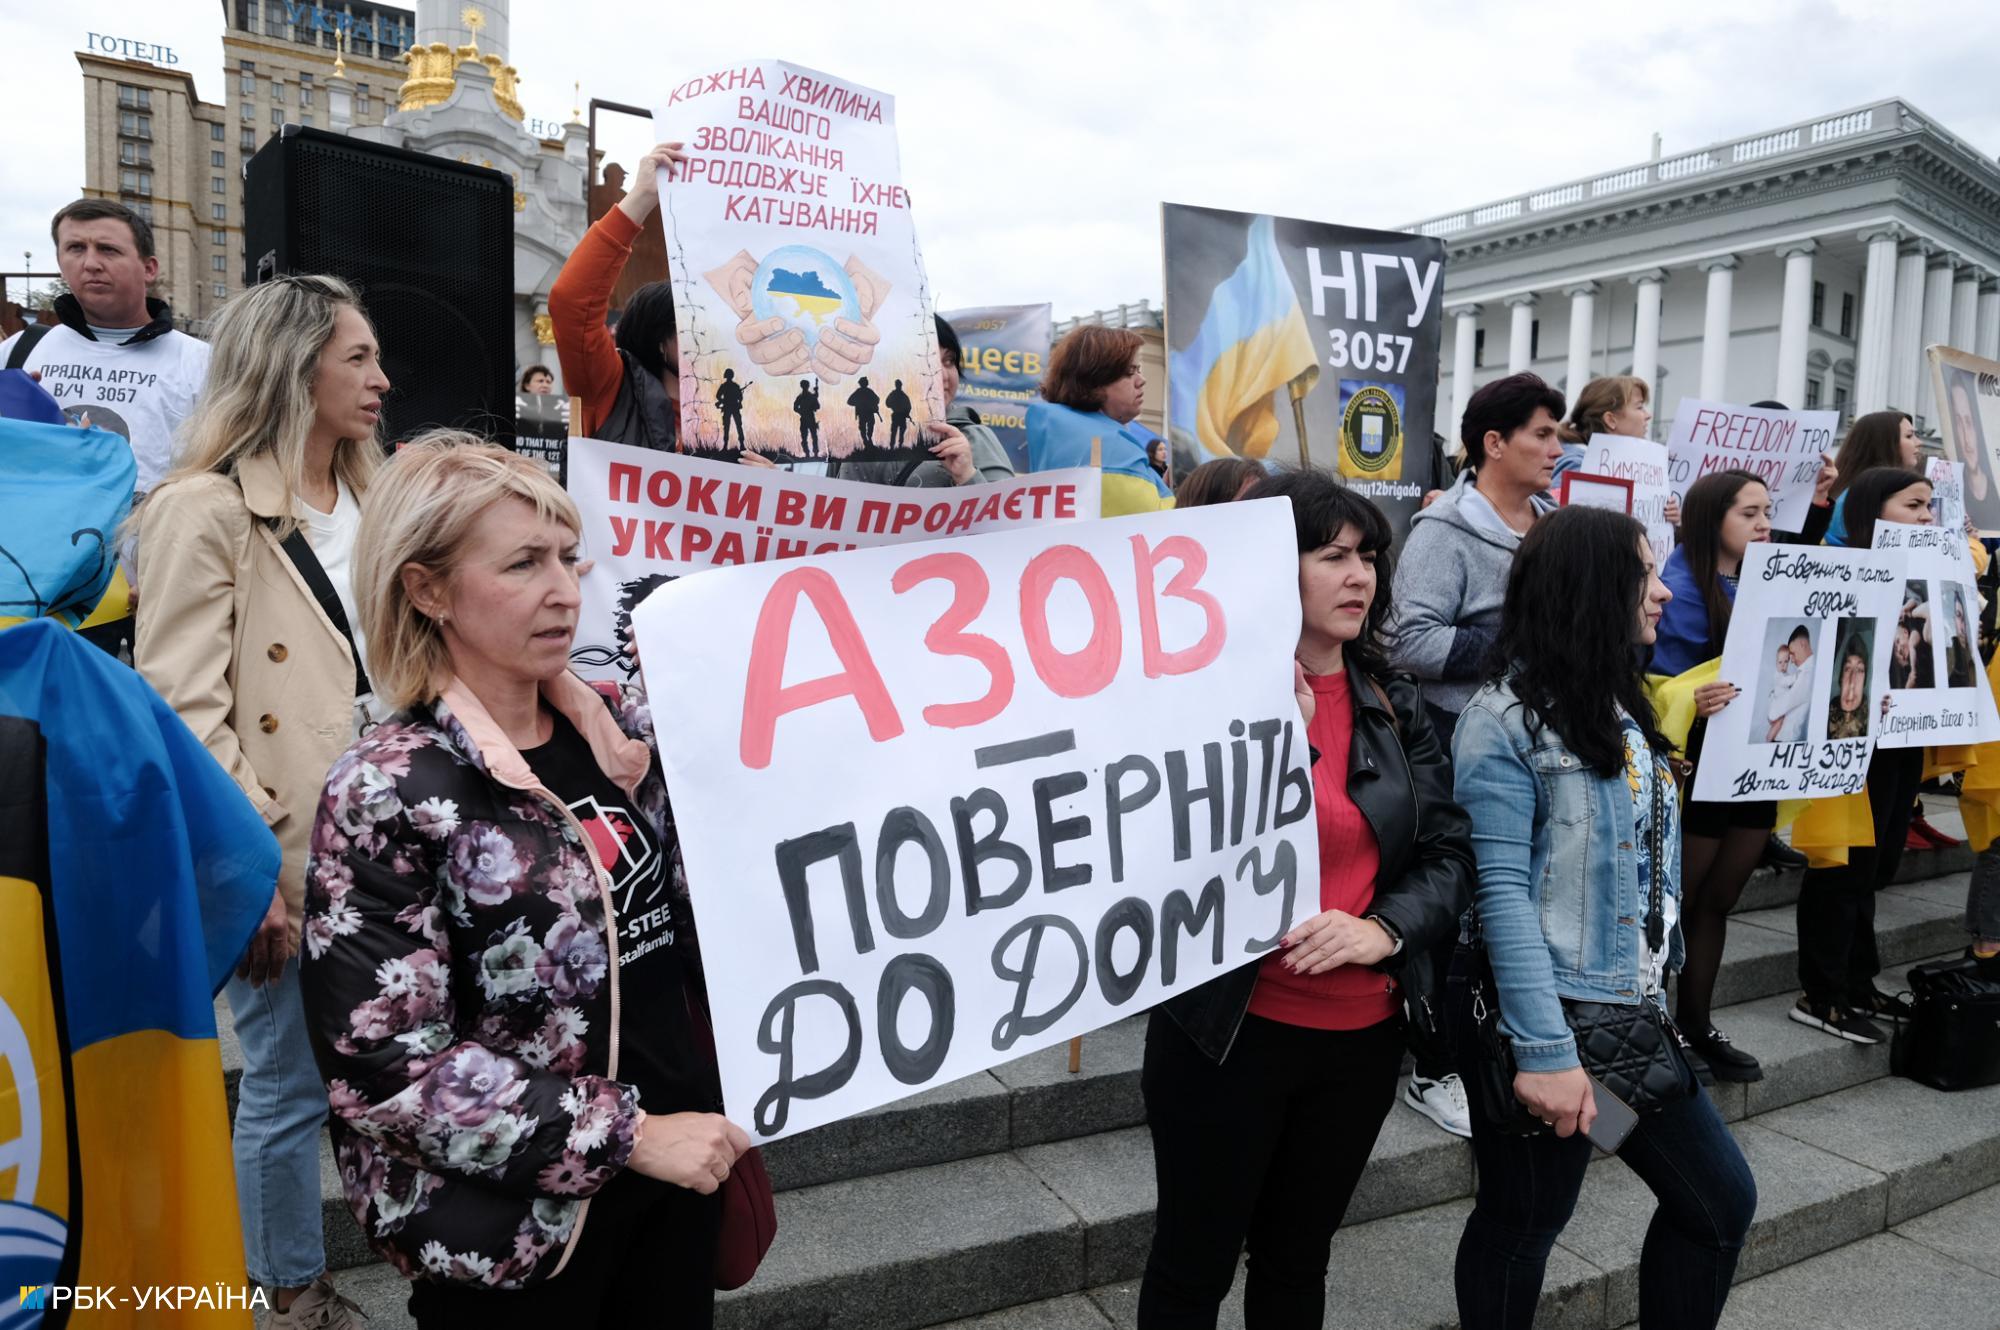 &#8220;Всех на всех&#8221;: в Киеве прошла акция с требованием освободить пленных